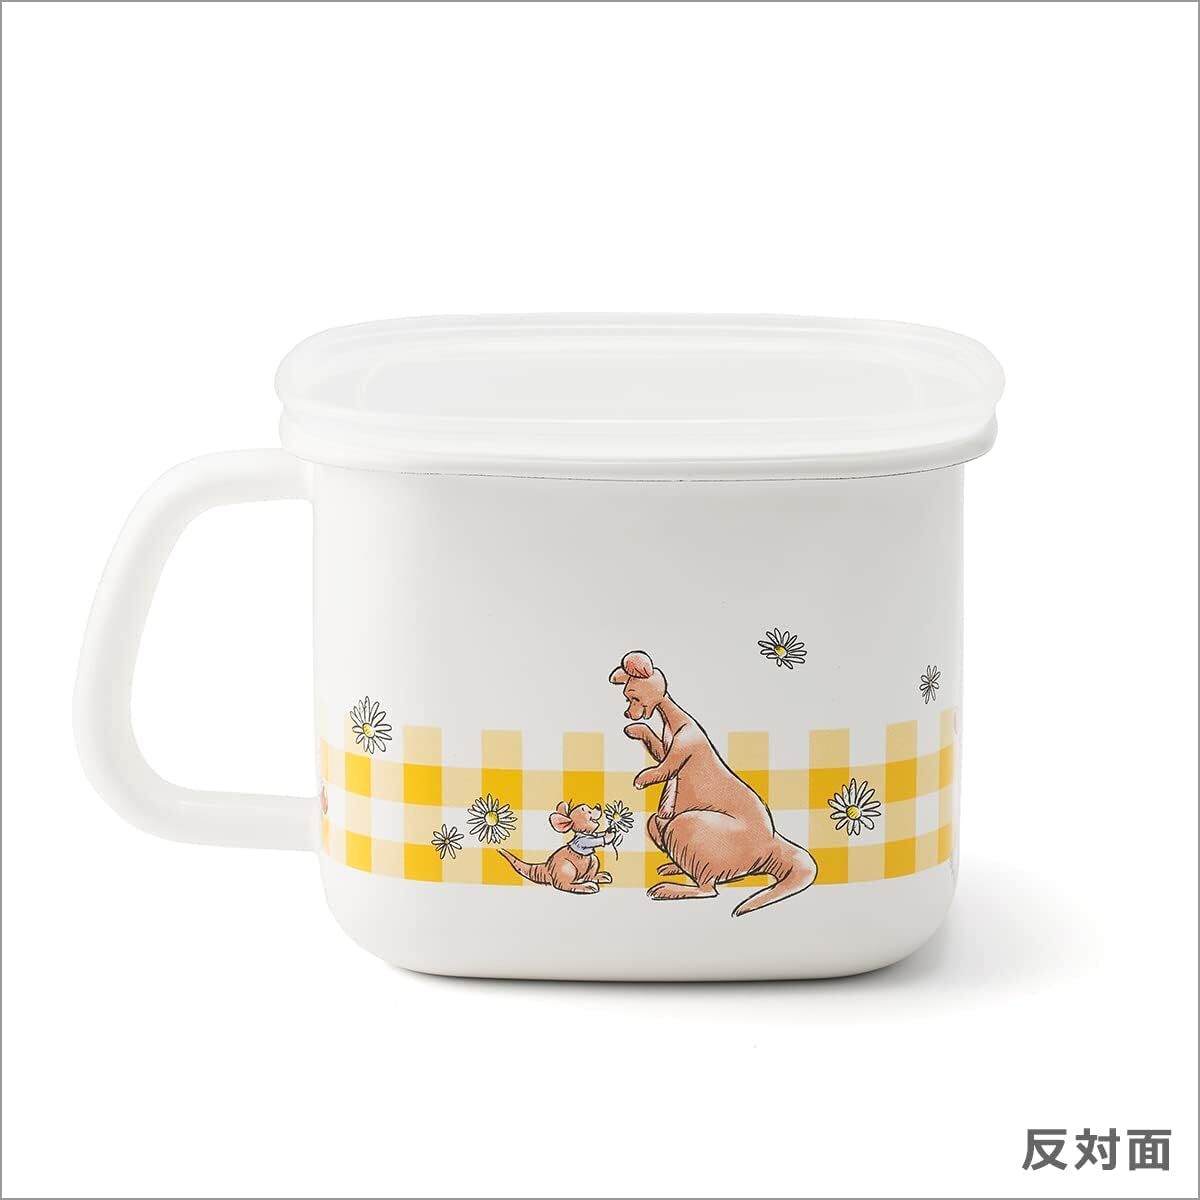 日本餐具 FUJIHORO 富士琺瑯 Disney Winnie the Pooh 小熊維尼方型調理鍋1.4L 王球餐具 (9)